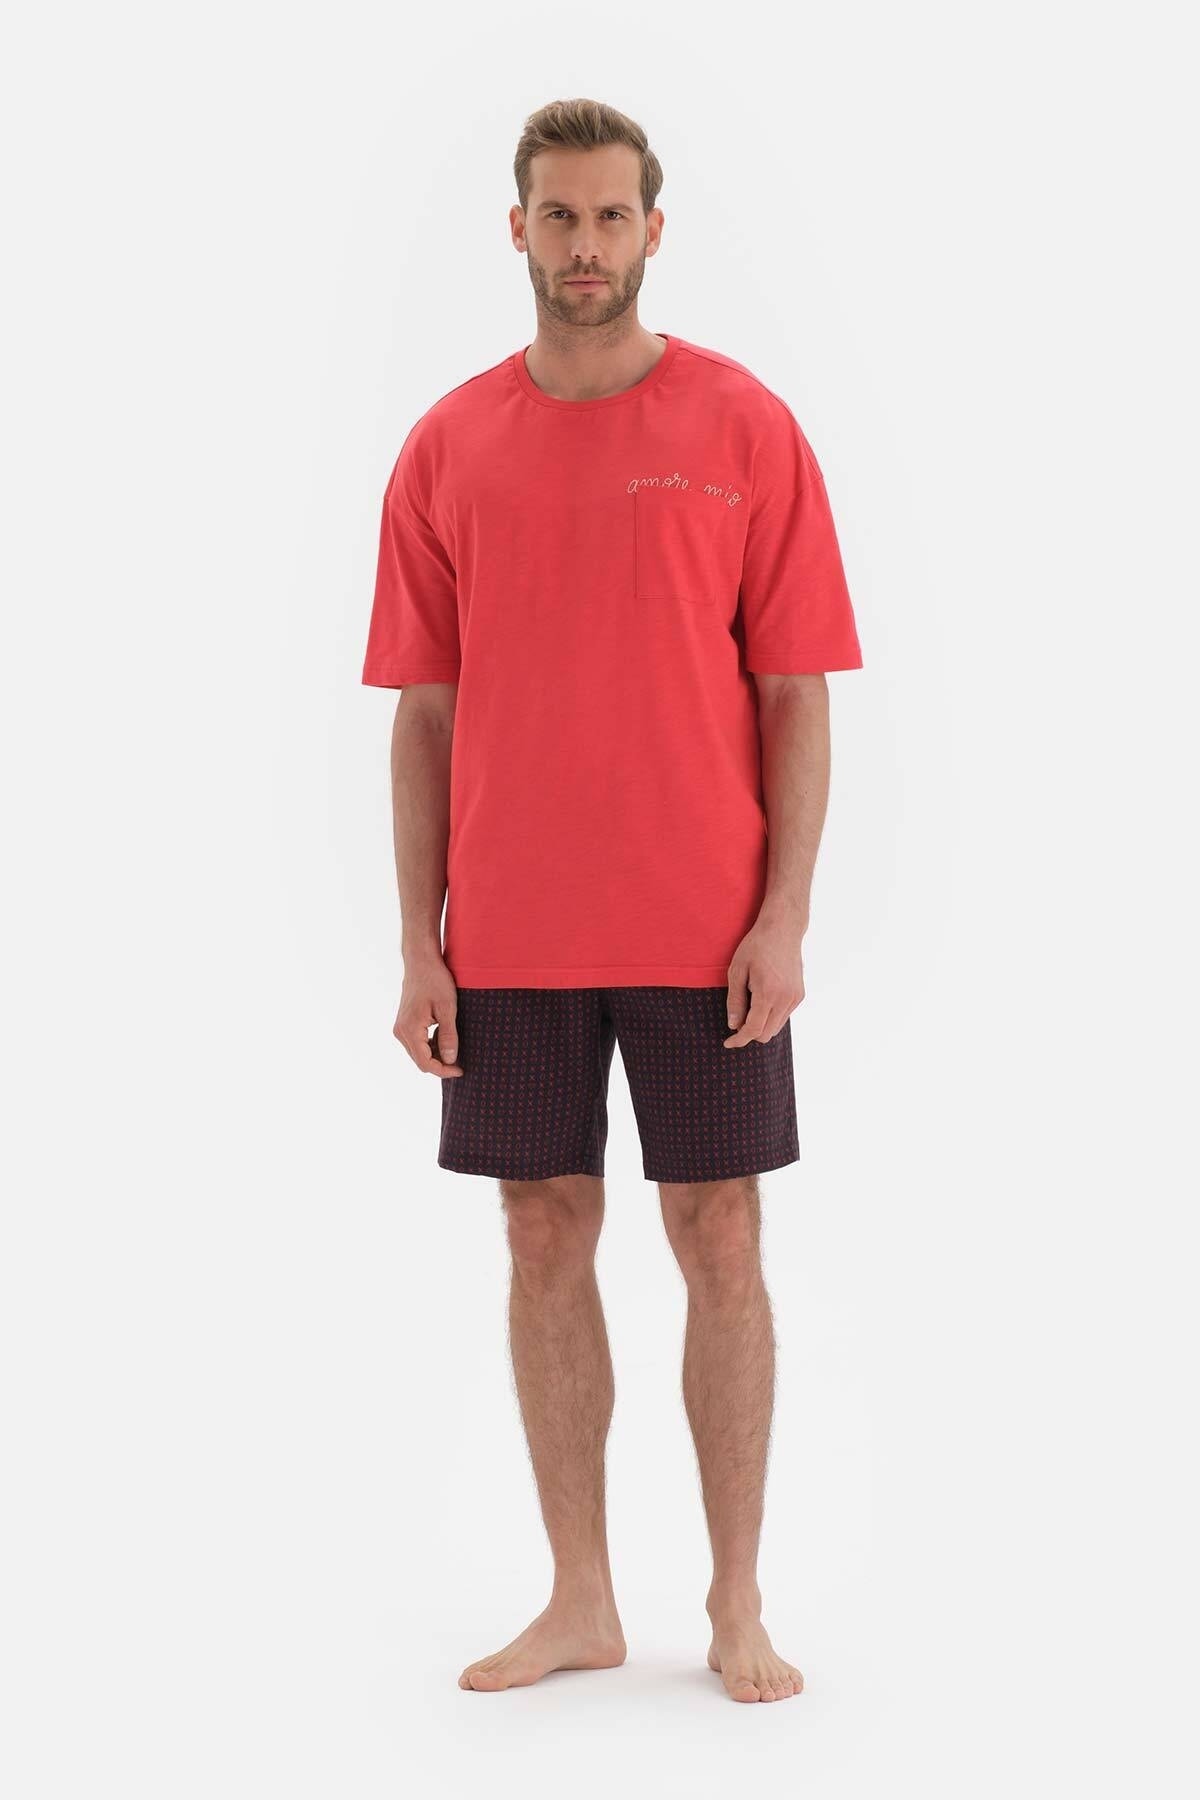 Dagi Red Embroidered Short Sleeve Cotton Shorts Pajamas Set